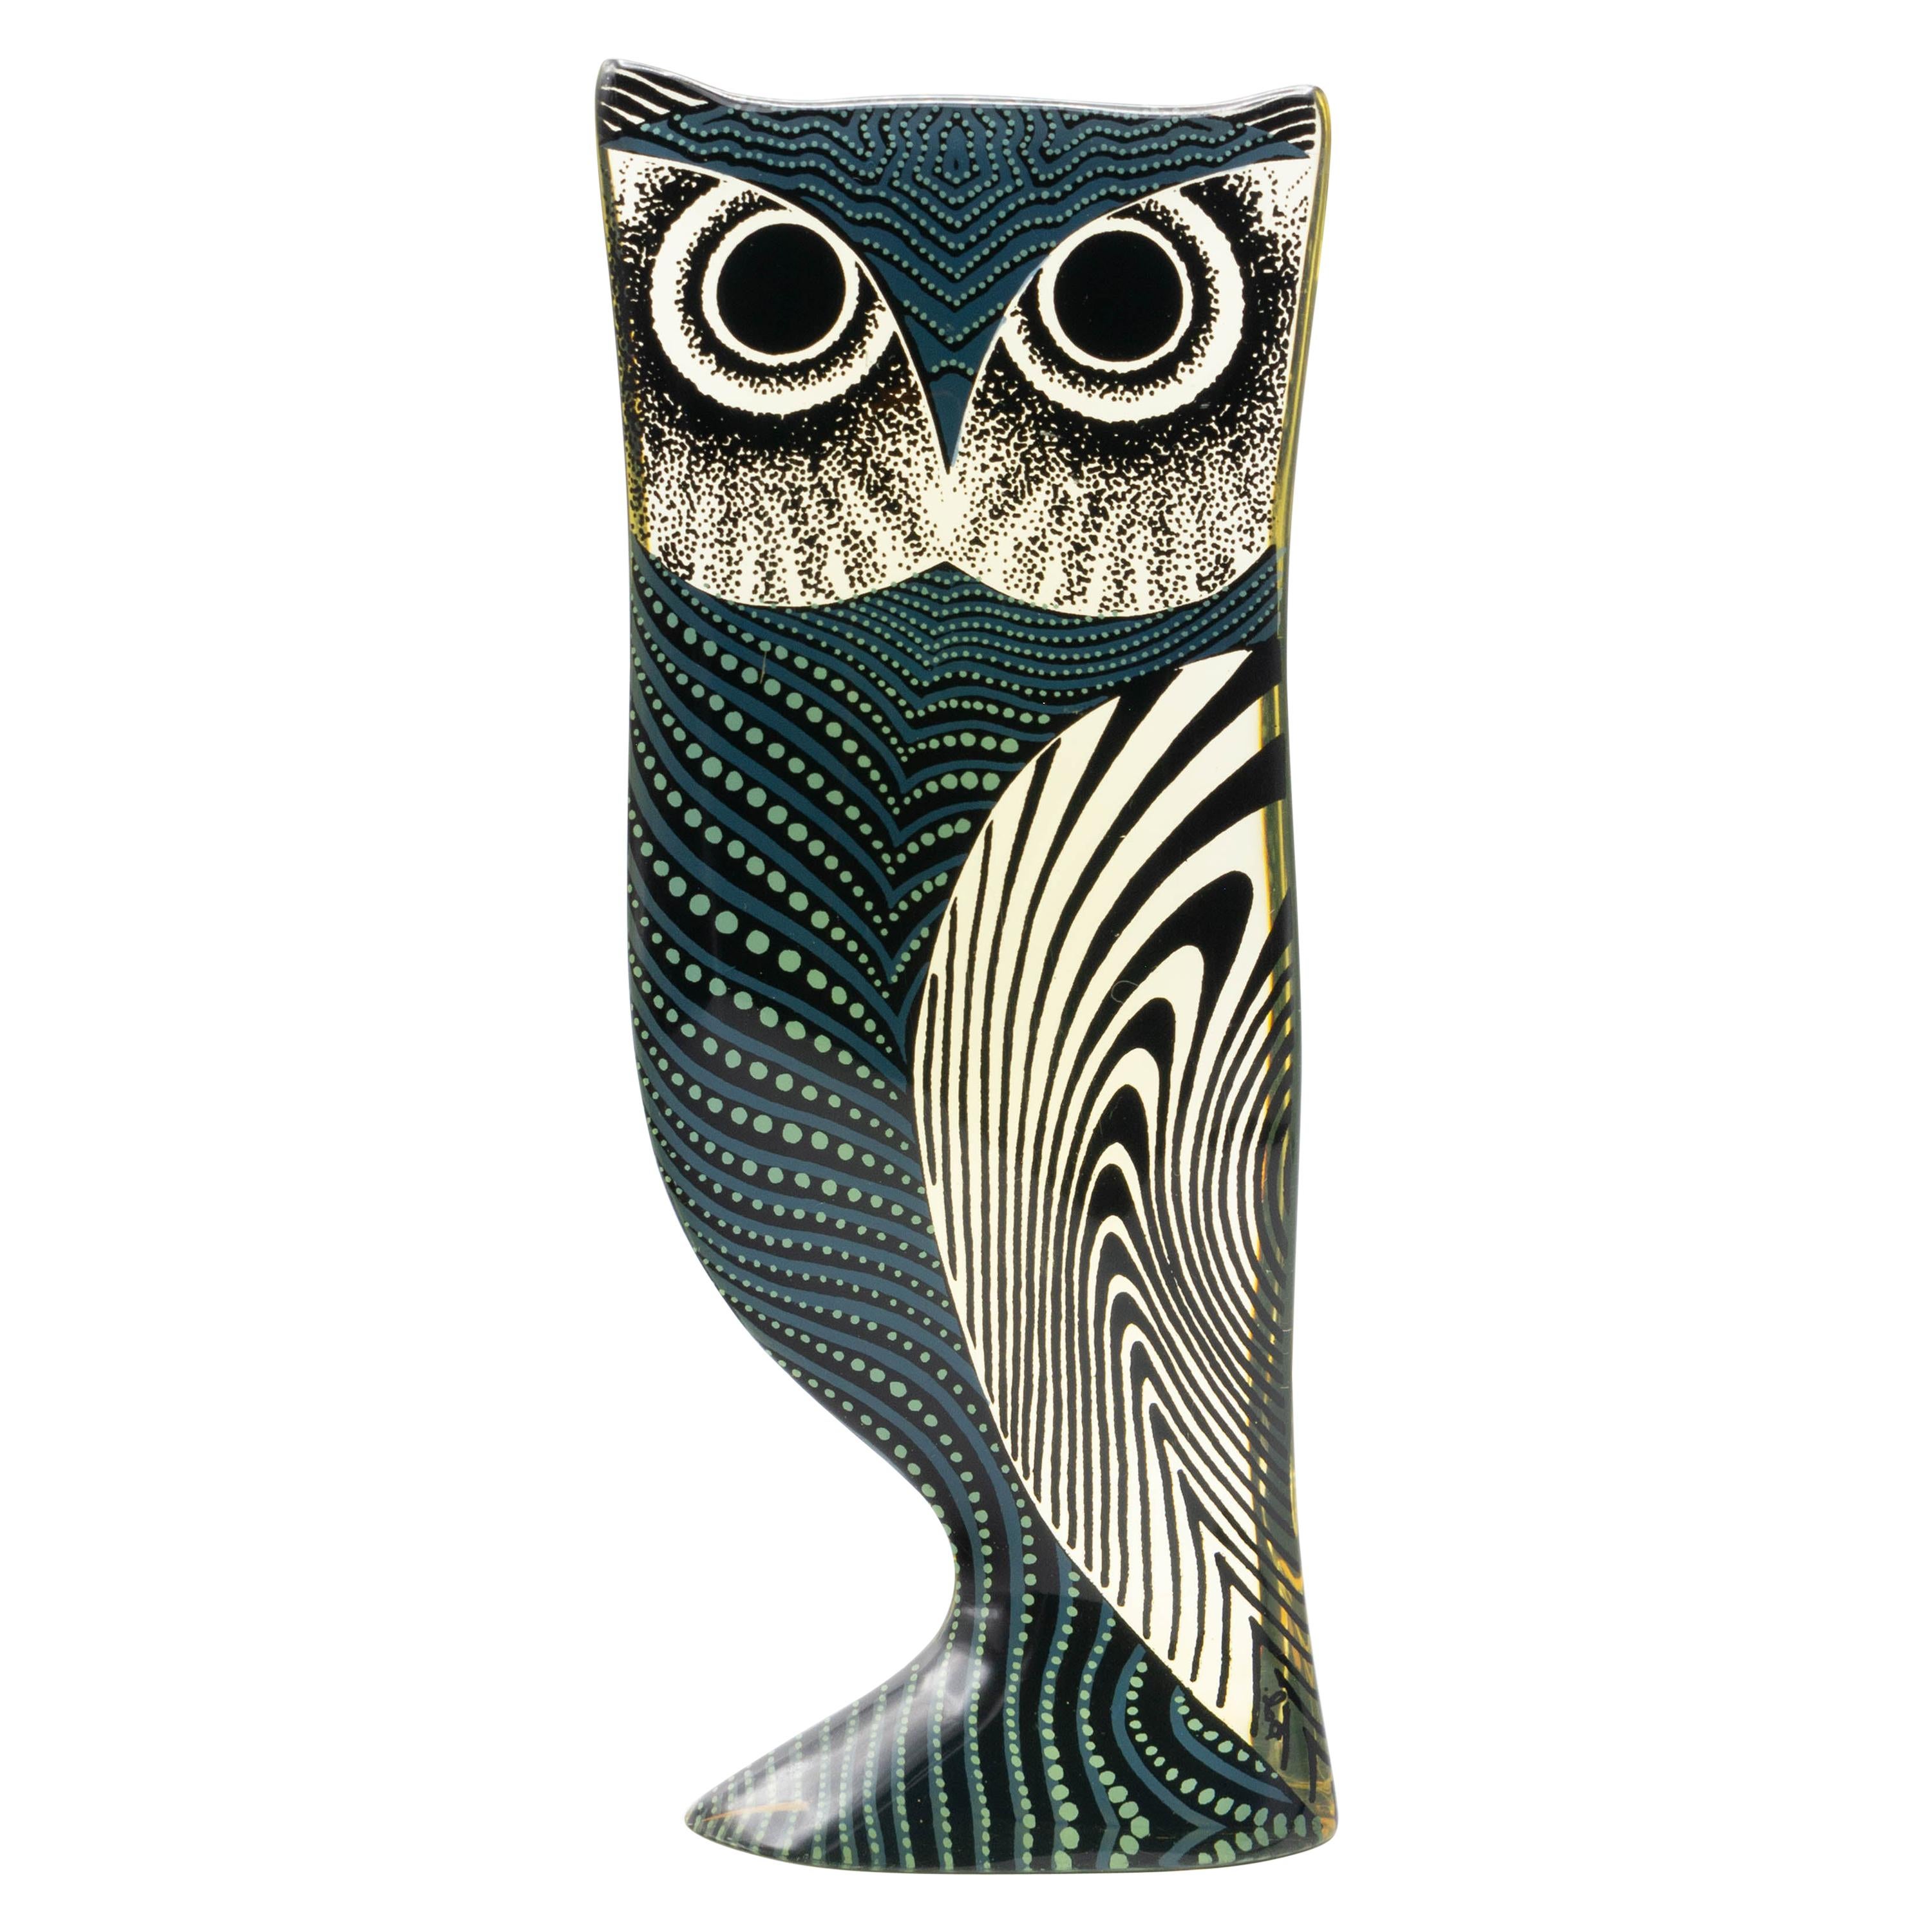 Palatnik Op Art Lucite Owl